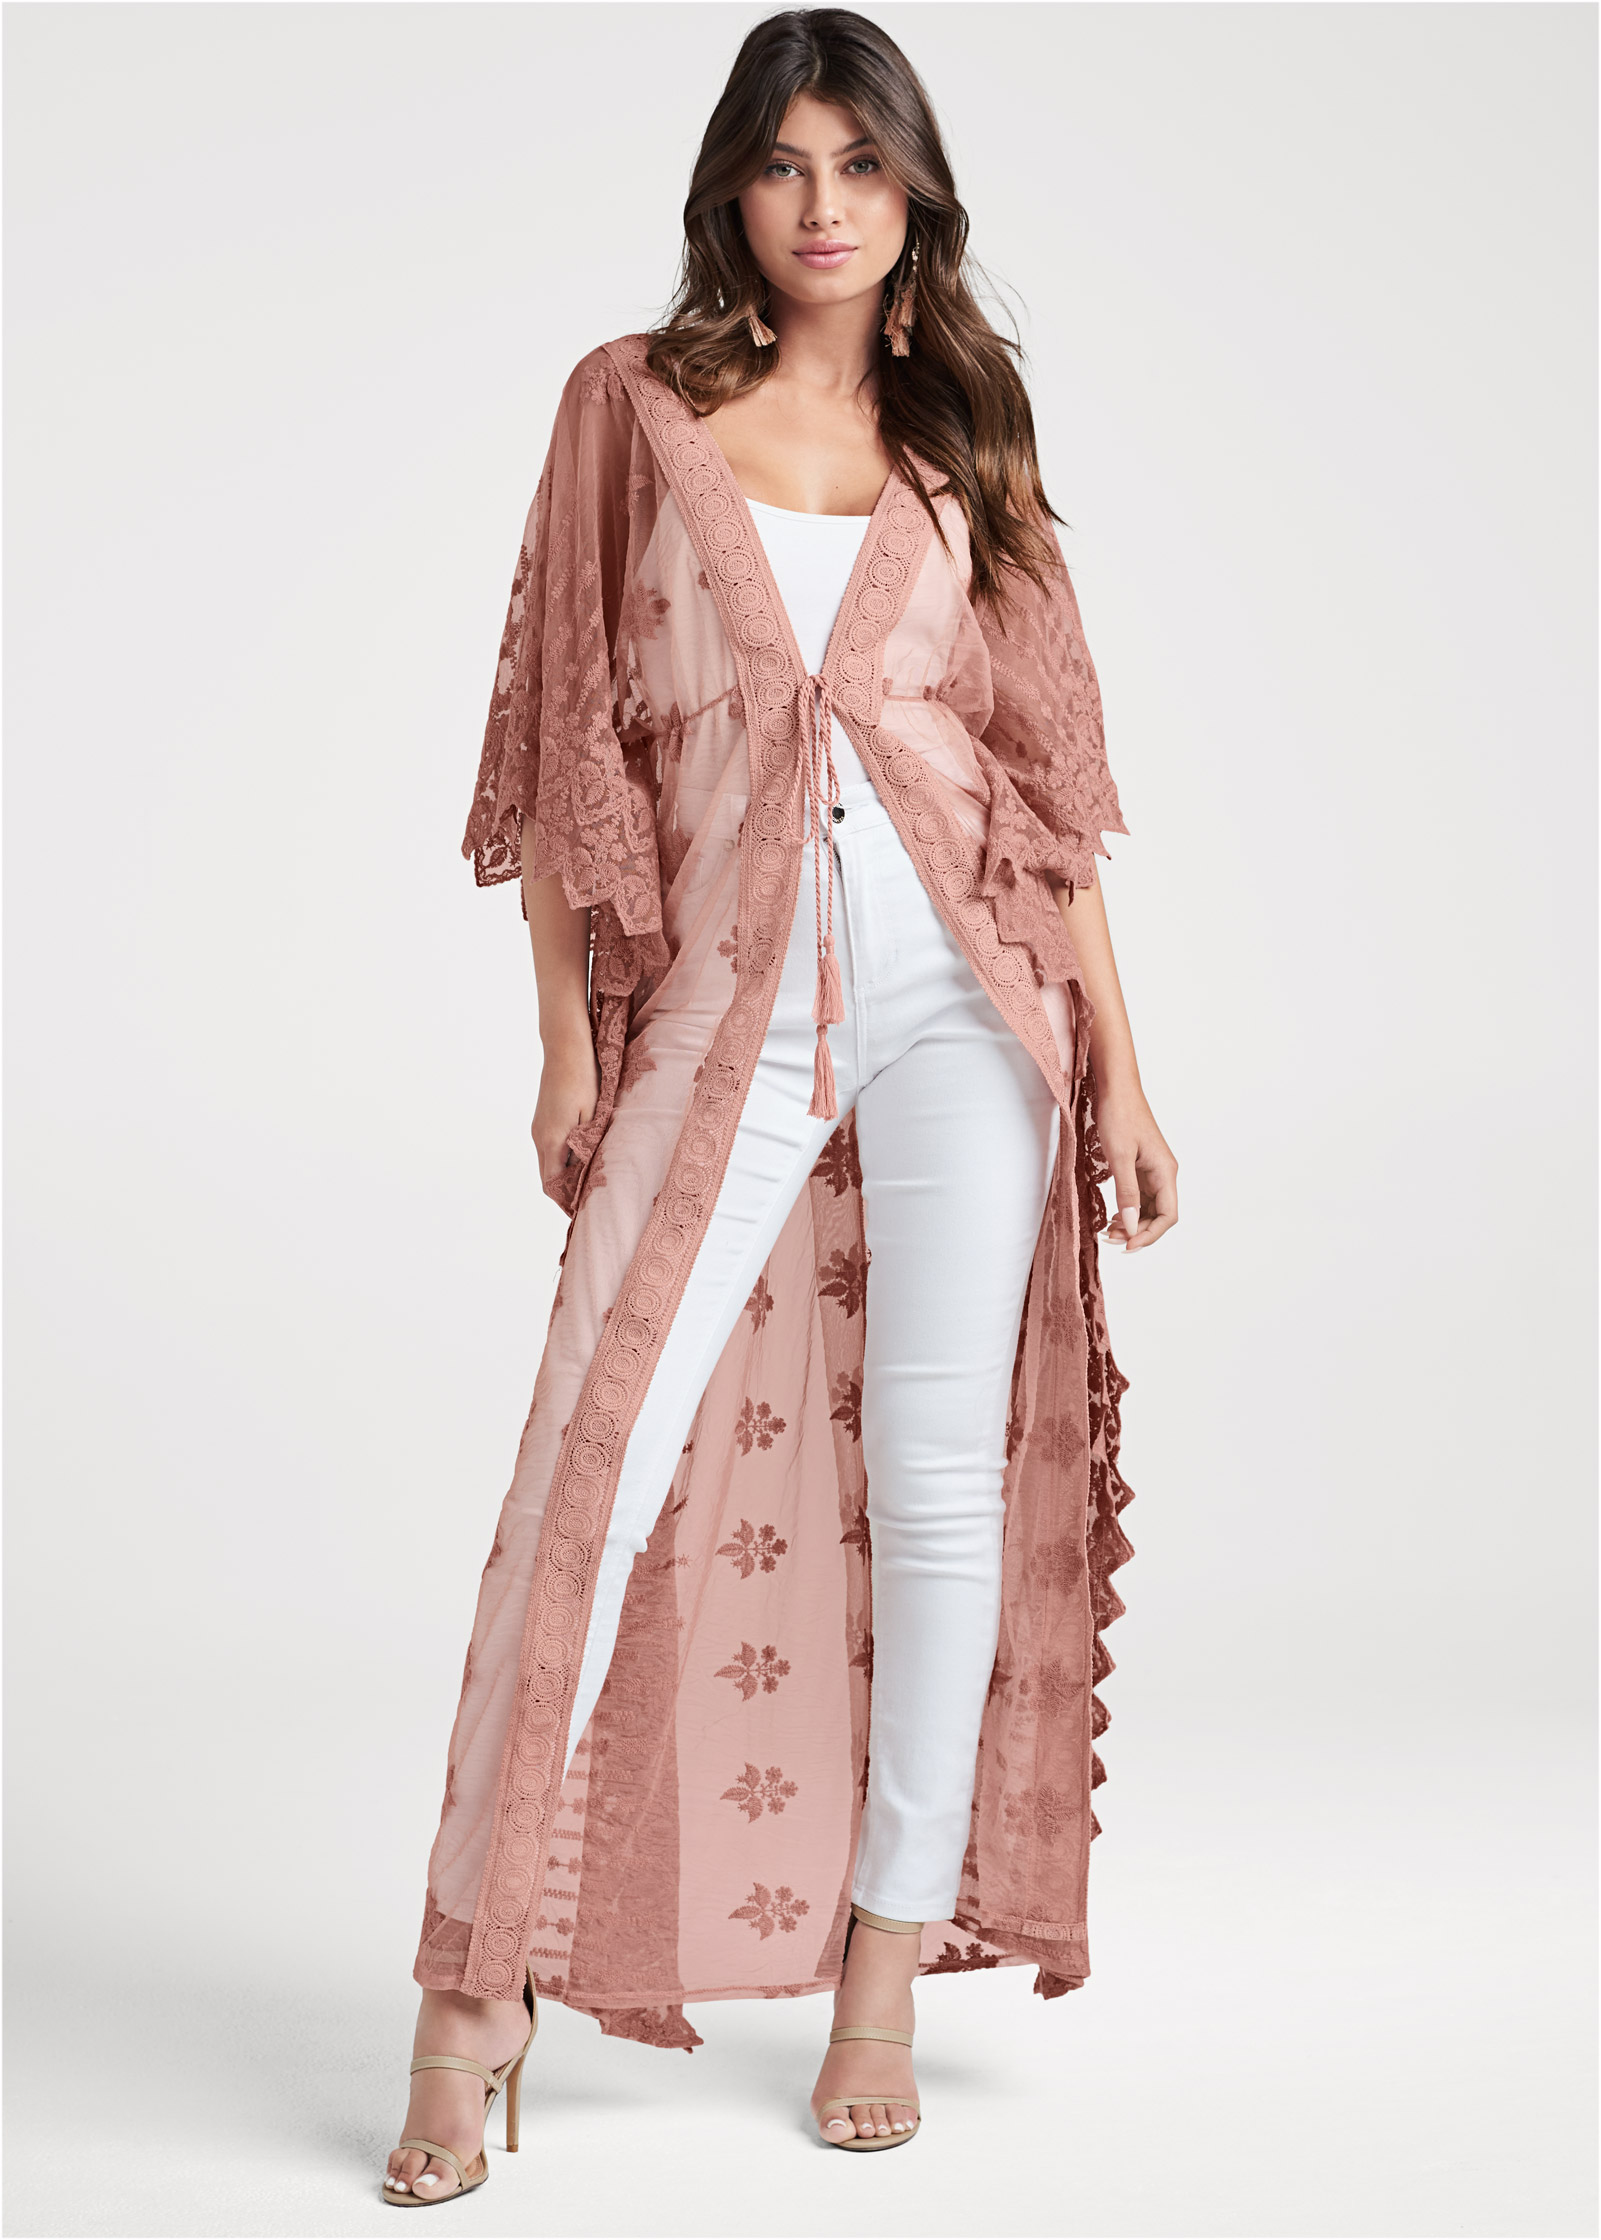 Embellished Kaftans Silk Blend O/Size 12-14-16-18-20-22 Pink Long Cold Shoulder 